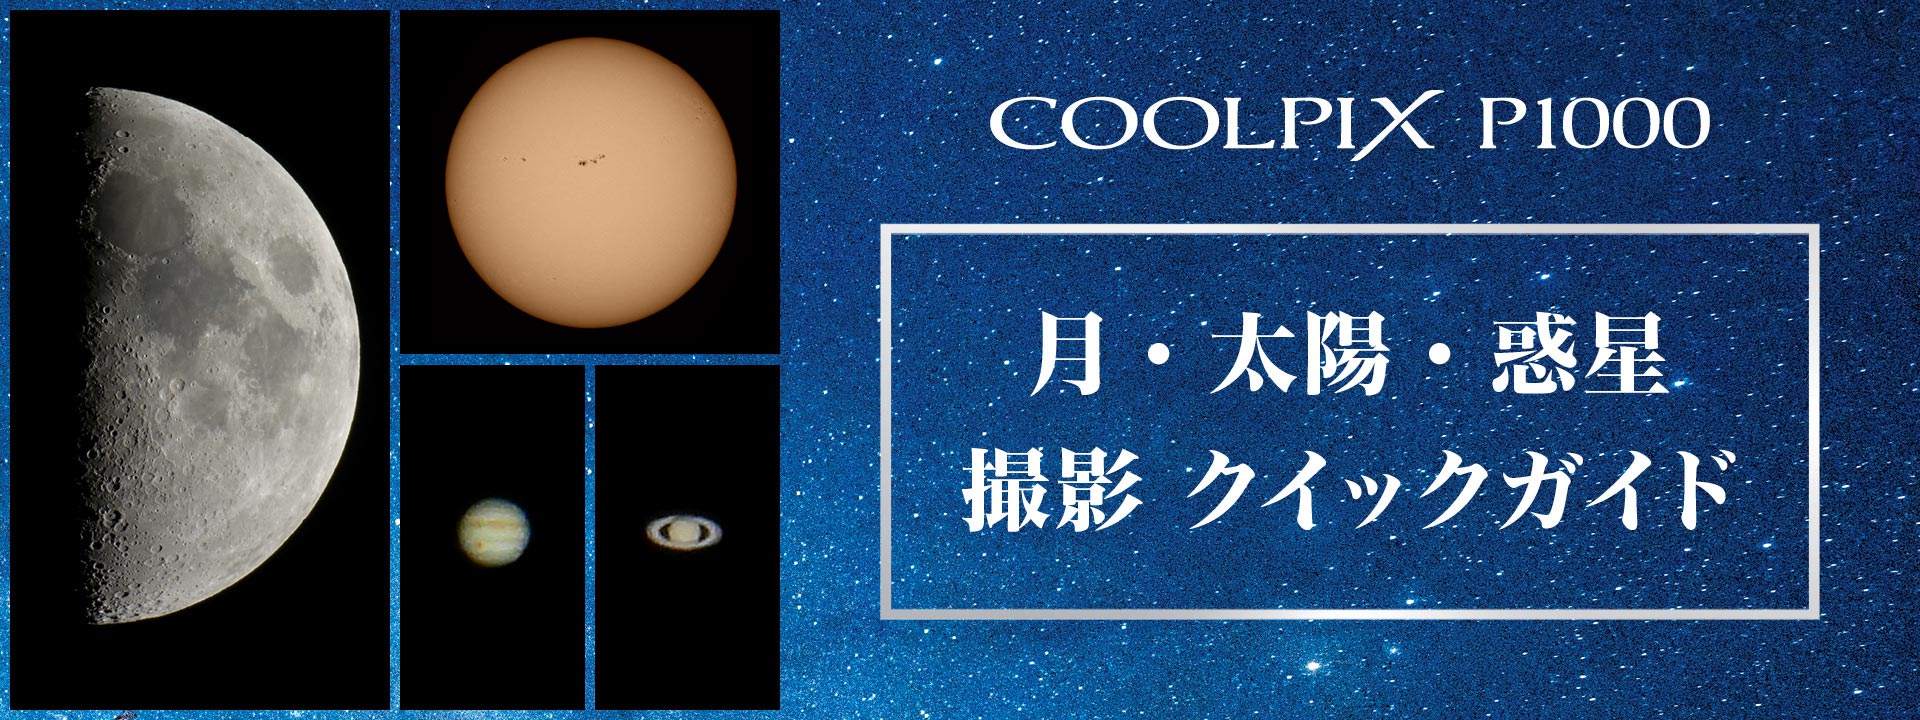 スペシャルコンテンツ COOLPIX P1000 月・太陽・惑星撮影クイックガイド